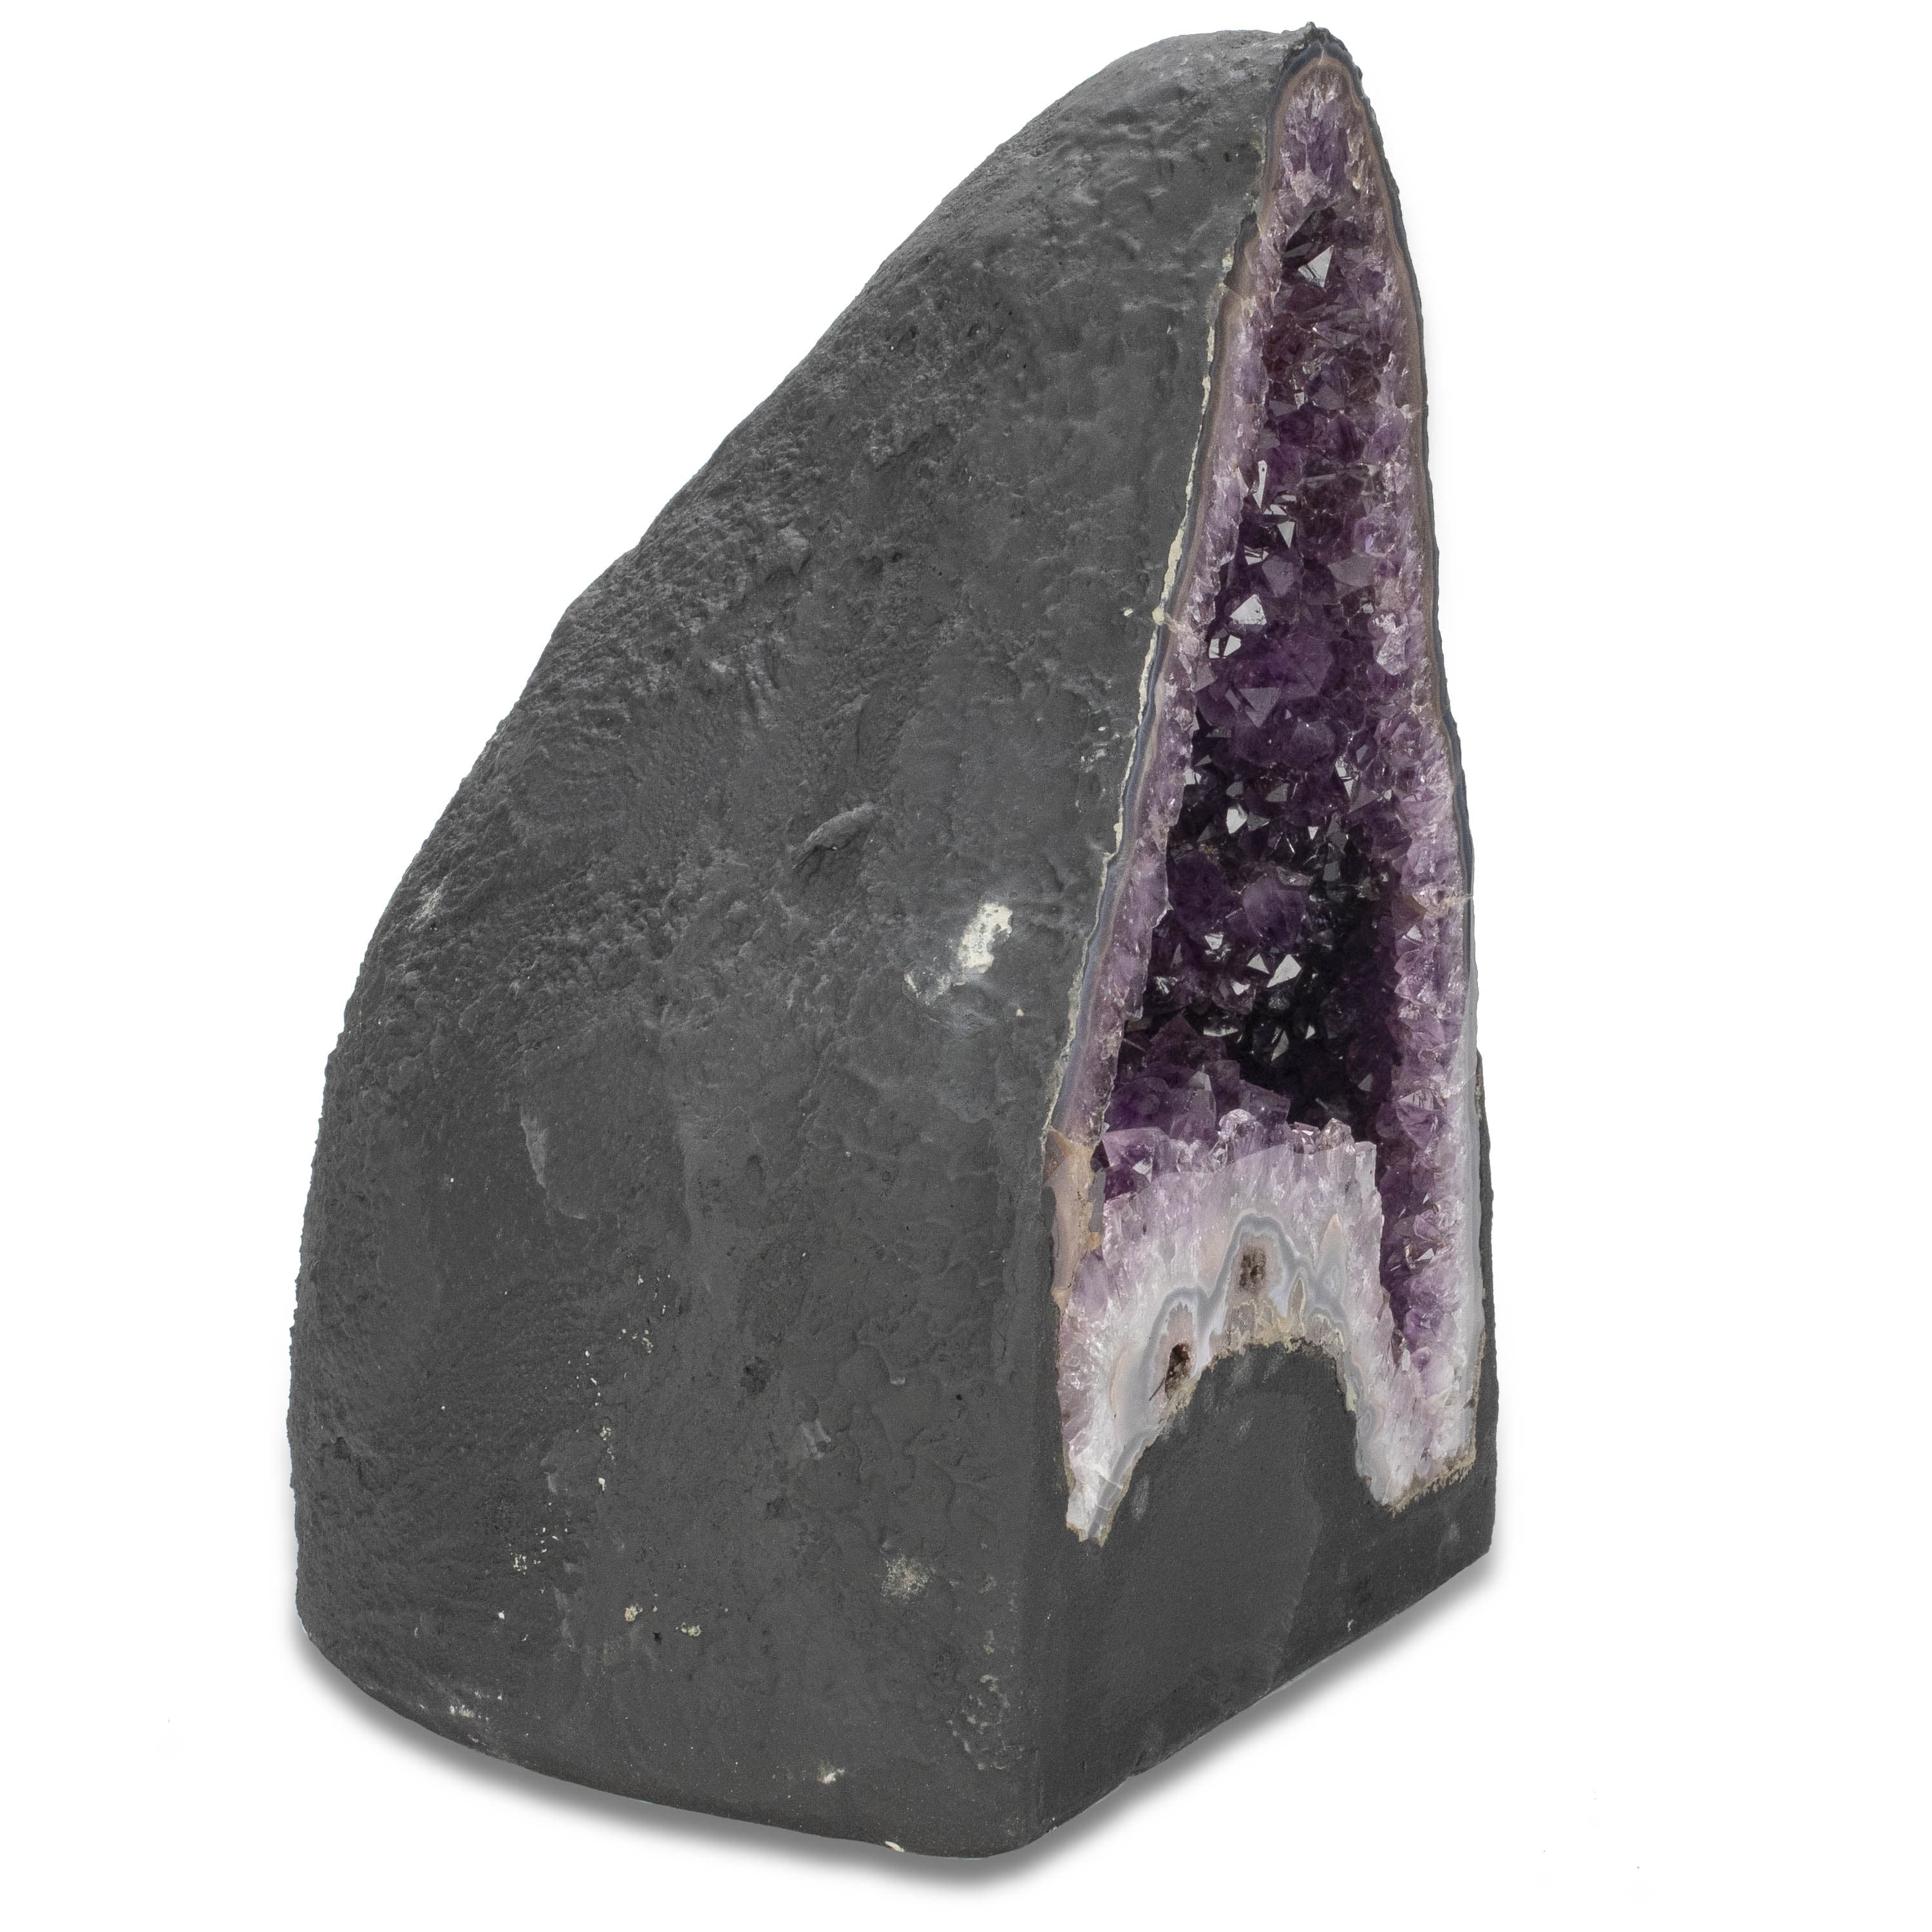 Raw Amethyst Gemstone Rock for sale, Cathedral Amethyst